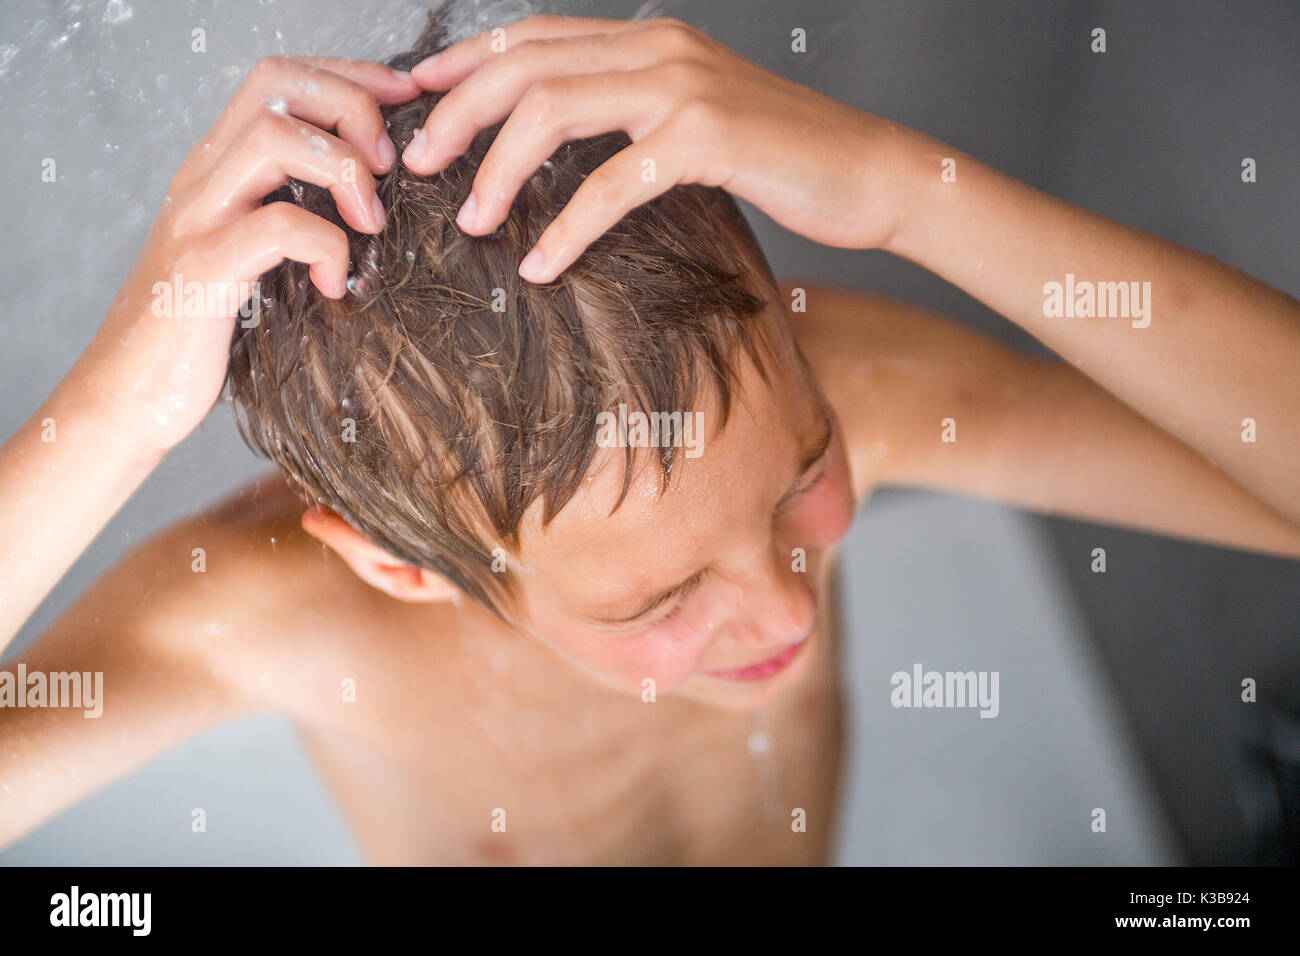 Asian boy shower